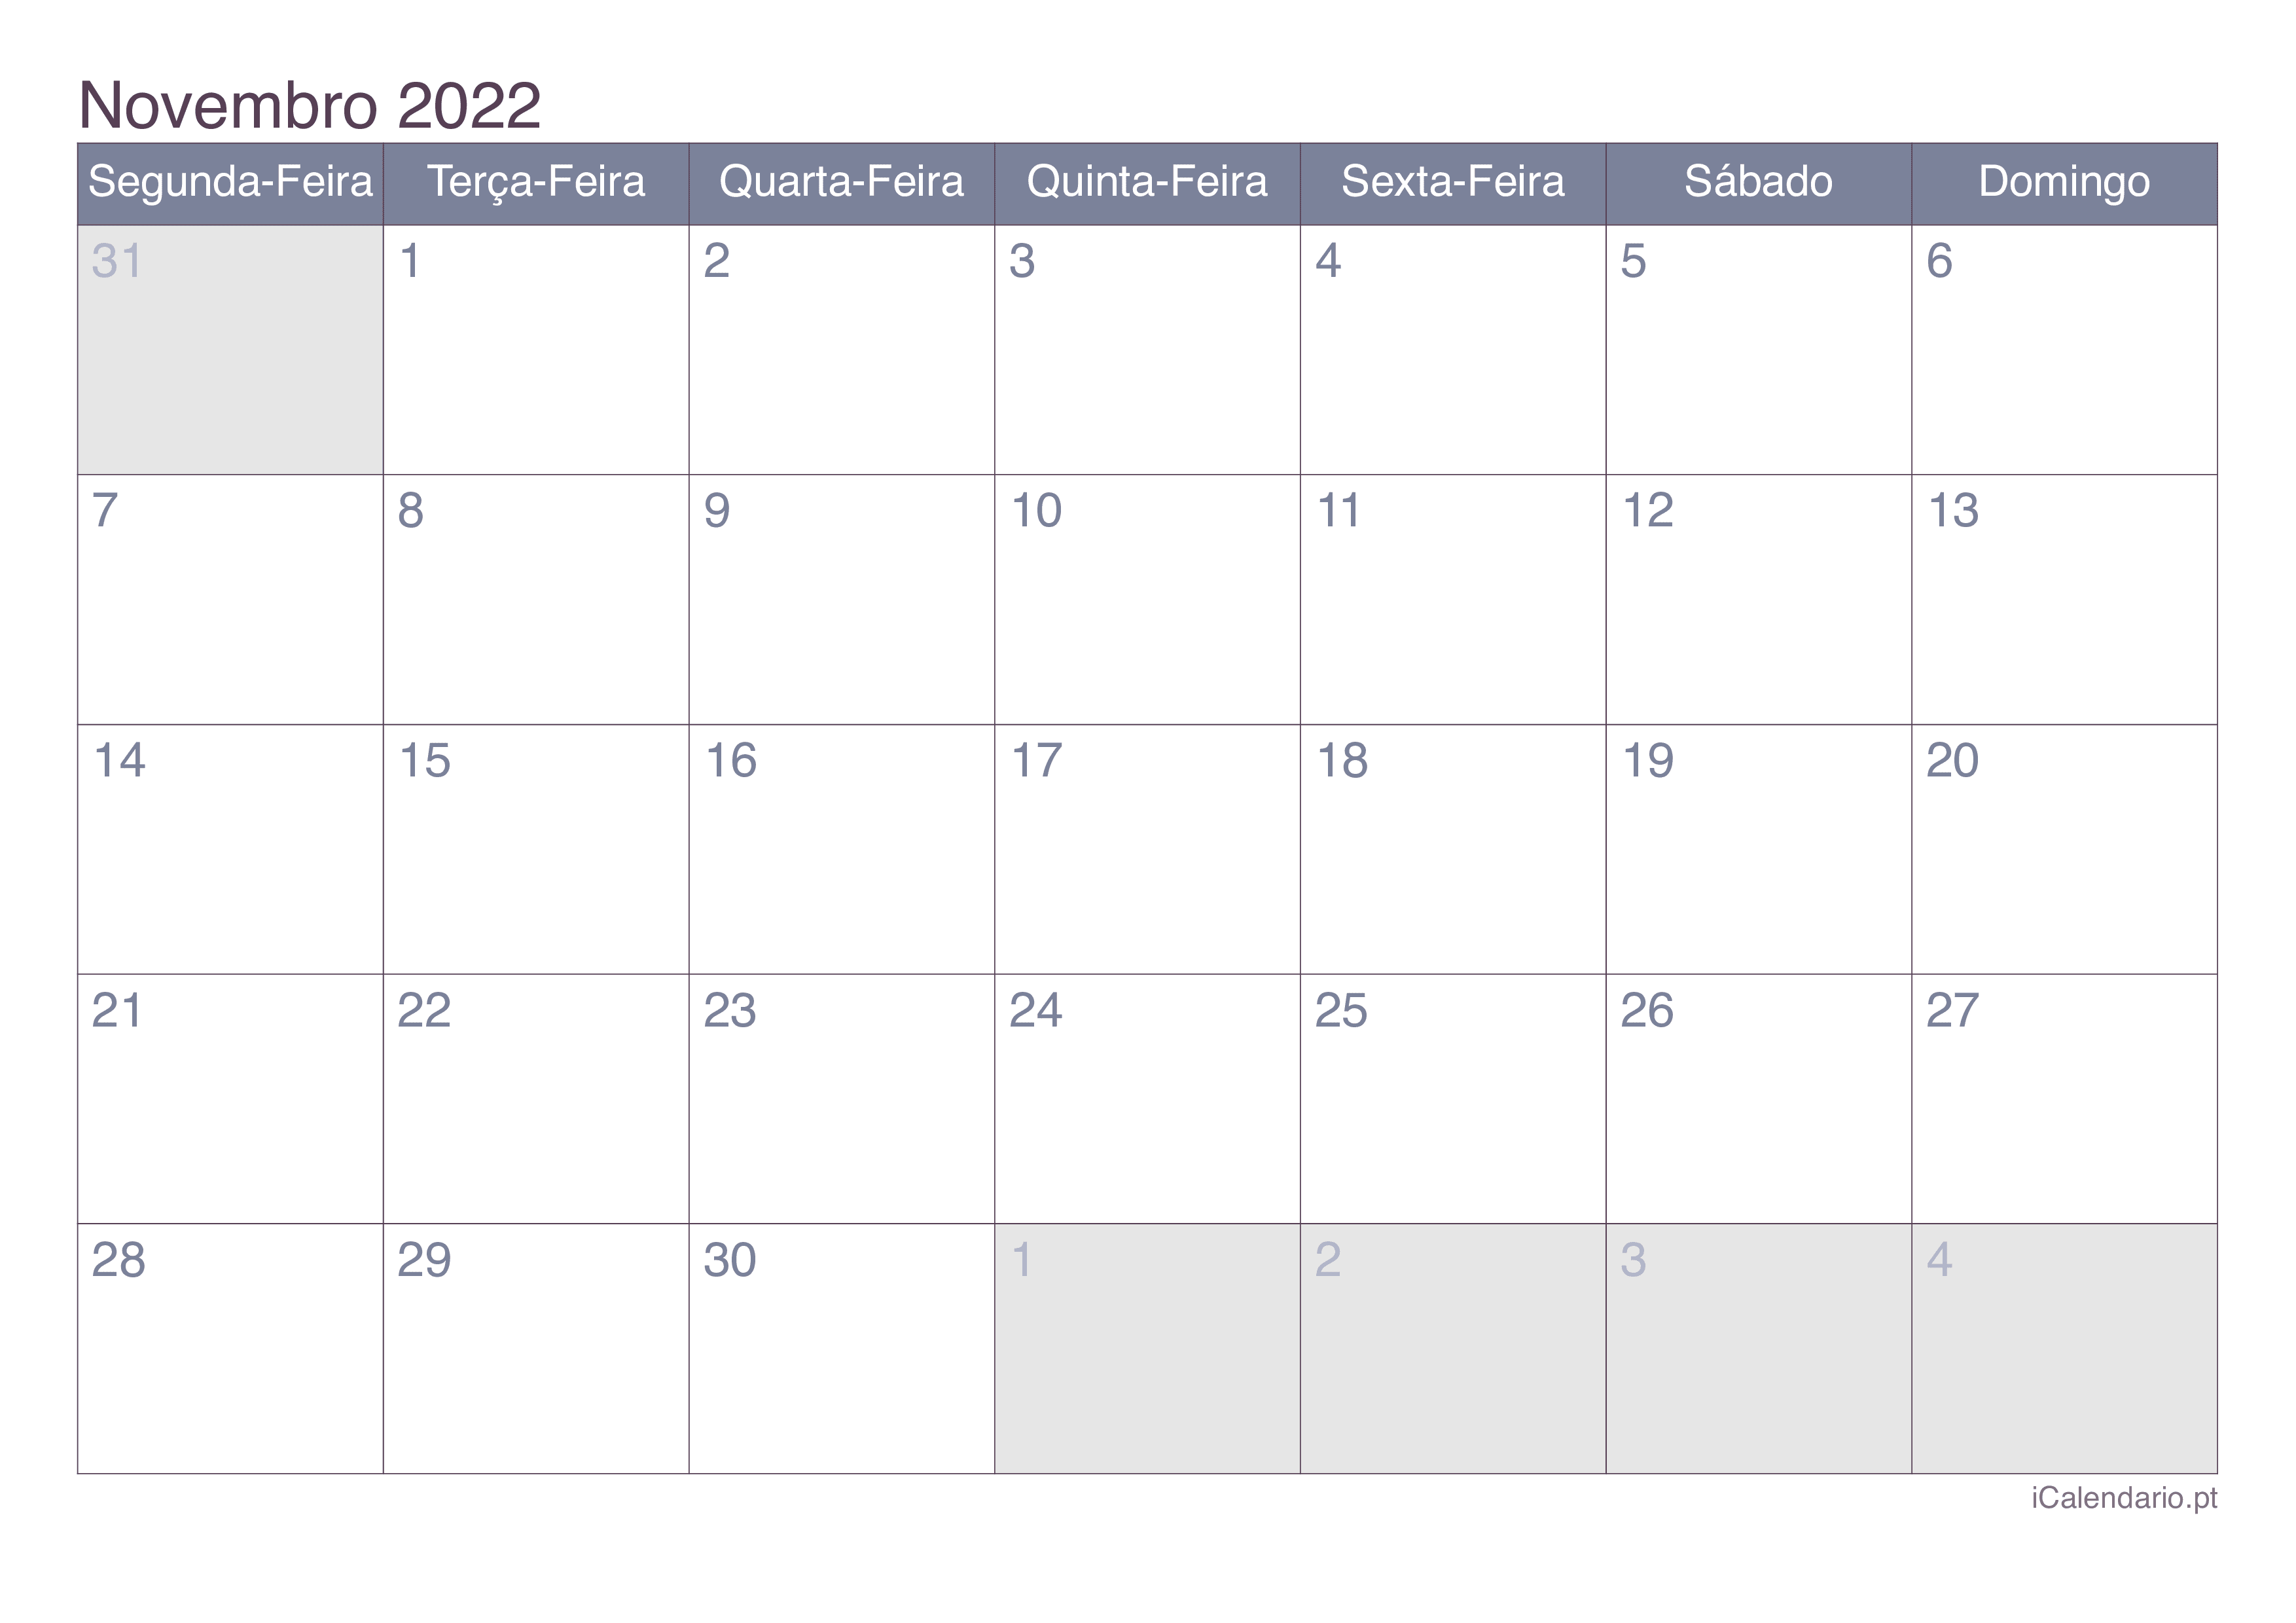 Calaméo - IT CHANNEL 92 NOVEMBRO 2022